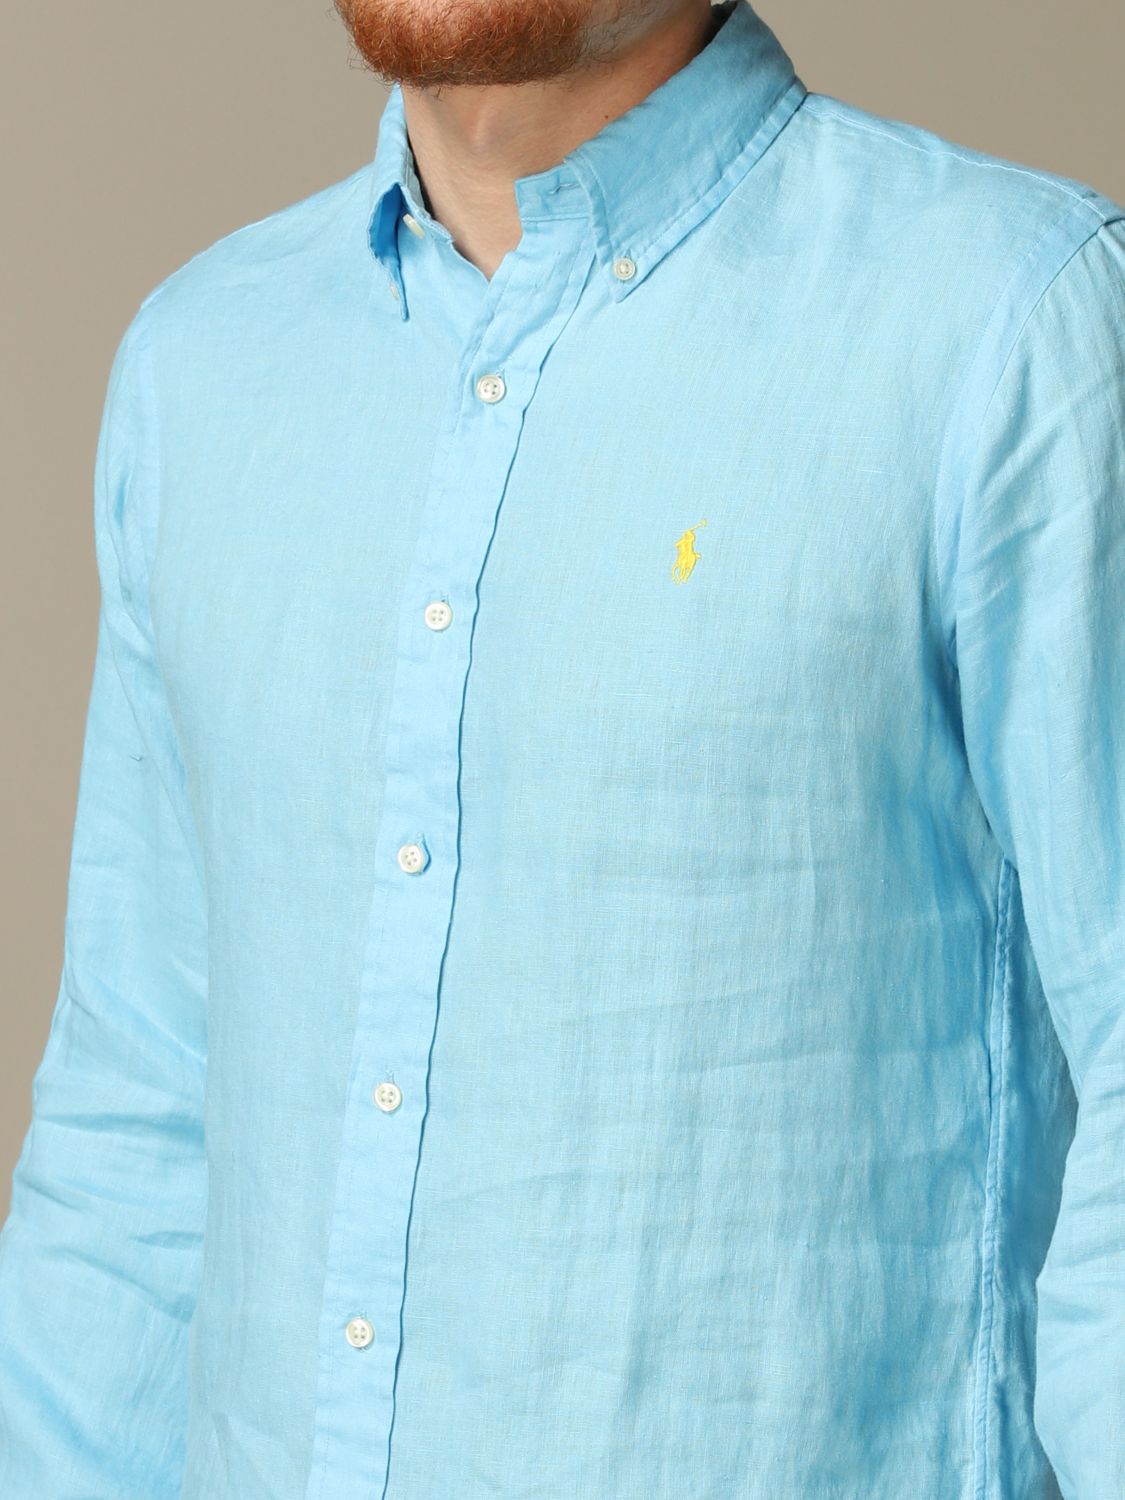 sky blue ralph lauren shirt